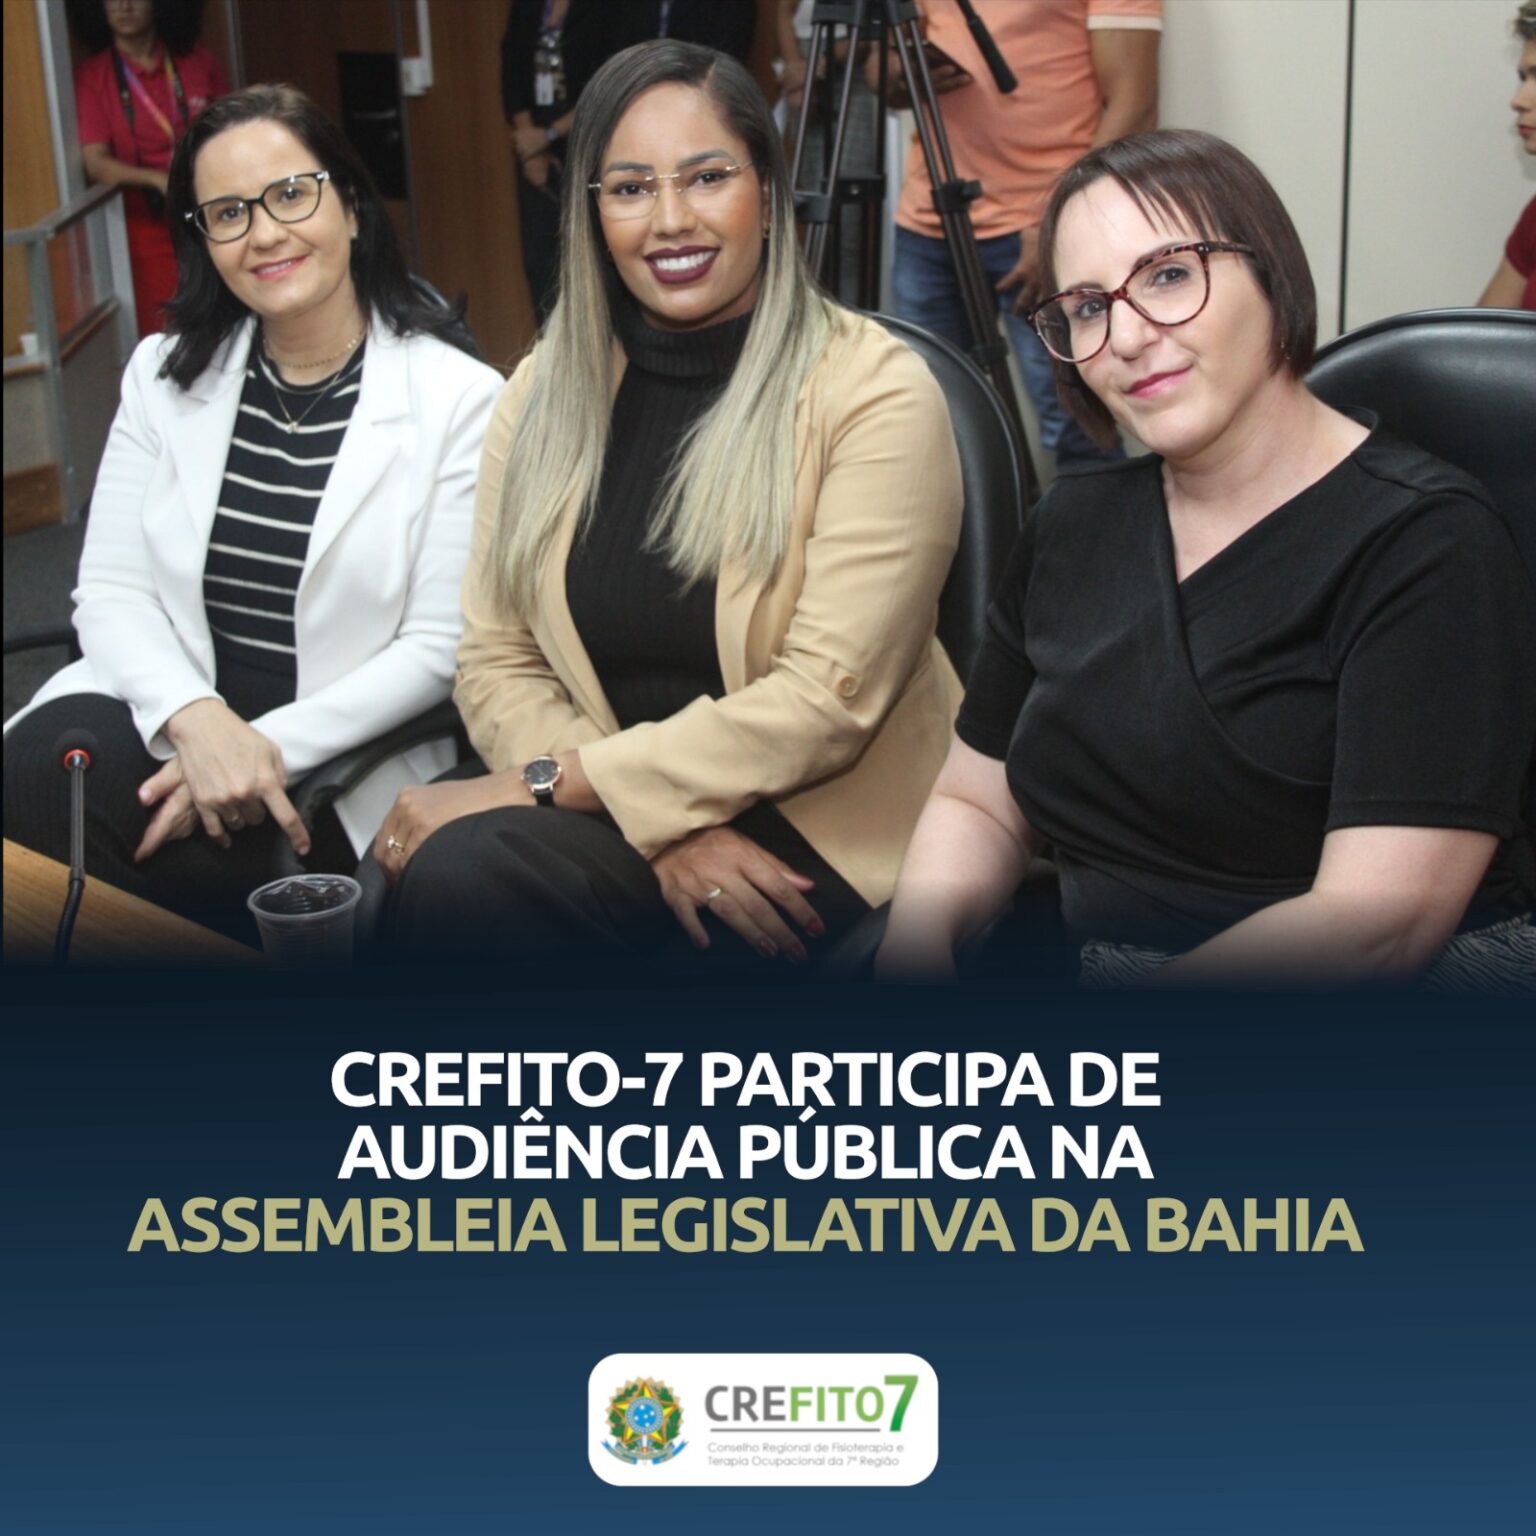 CREFITO-7 participa de audiência pública na Assembleia Legislativa da Bahia